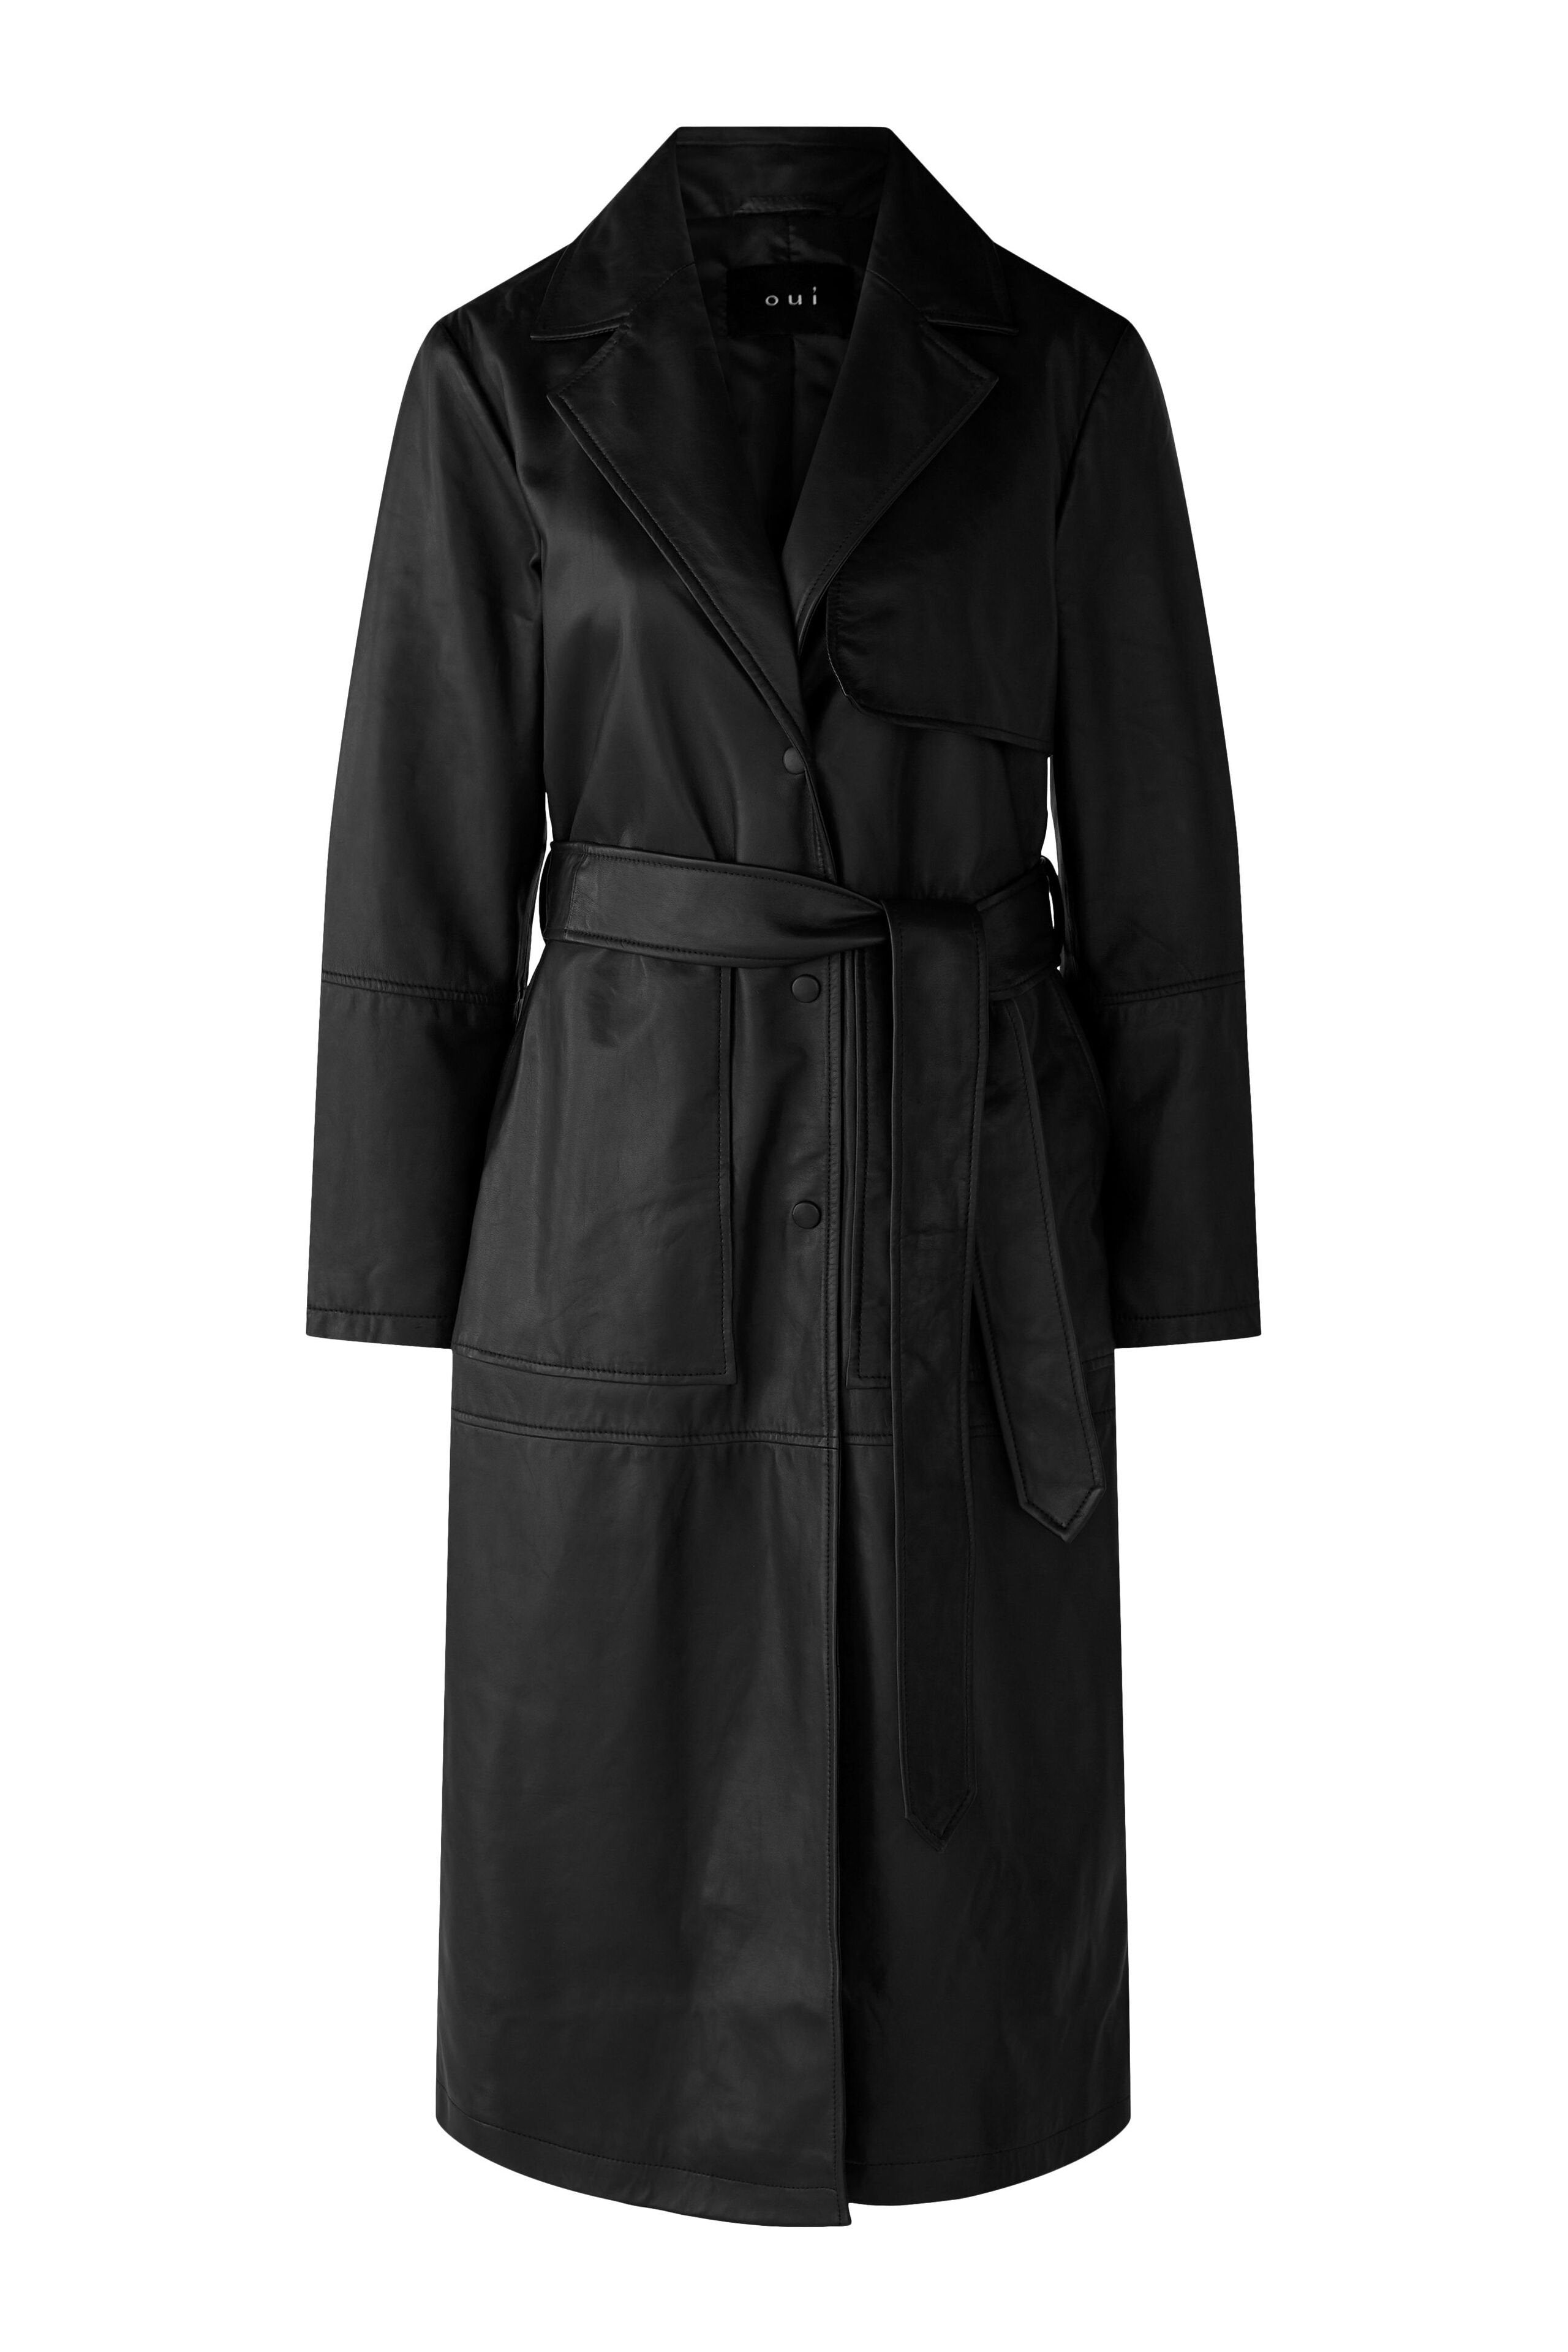 Black Suede Coat With Belt_79392_9990_01